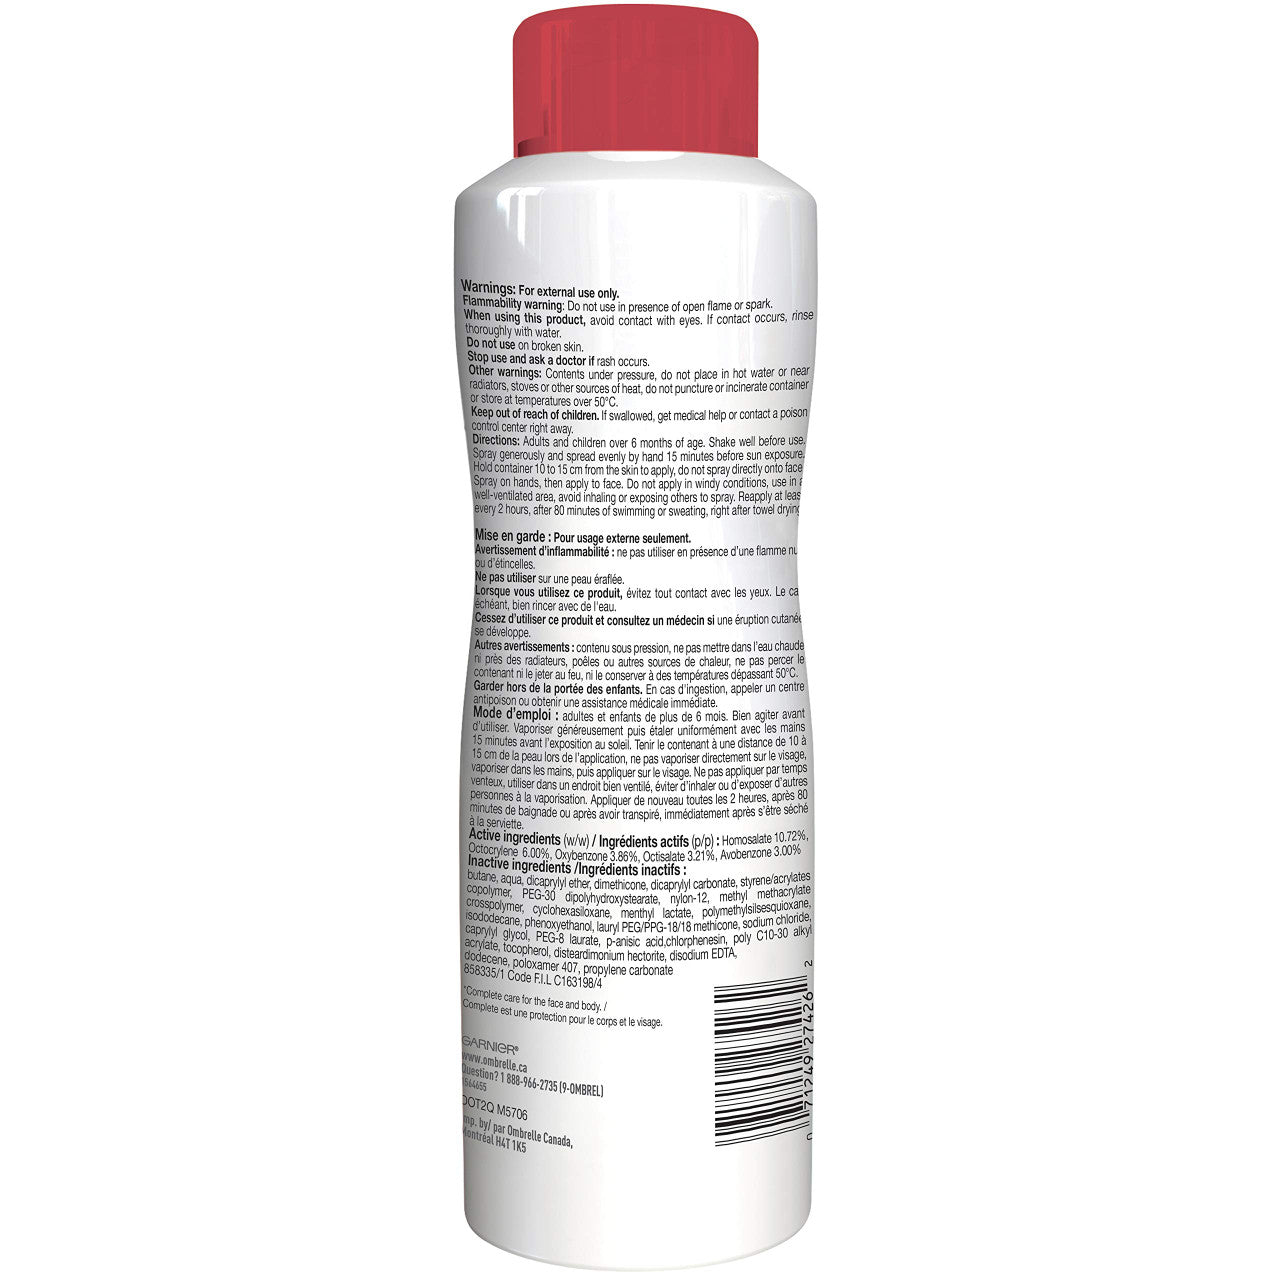 Garnier Ombrelle Complete Body Sun Protection Lotion Spray SPF 60, 142g